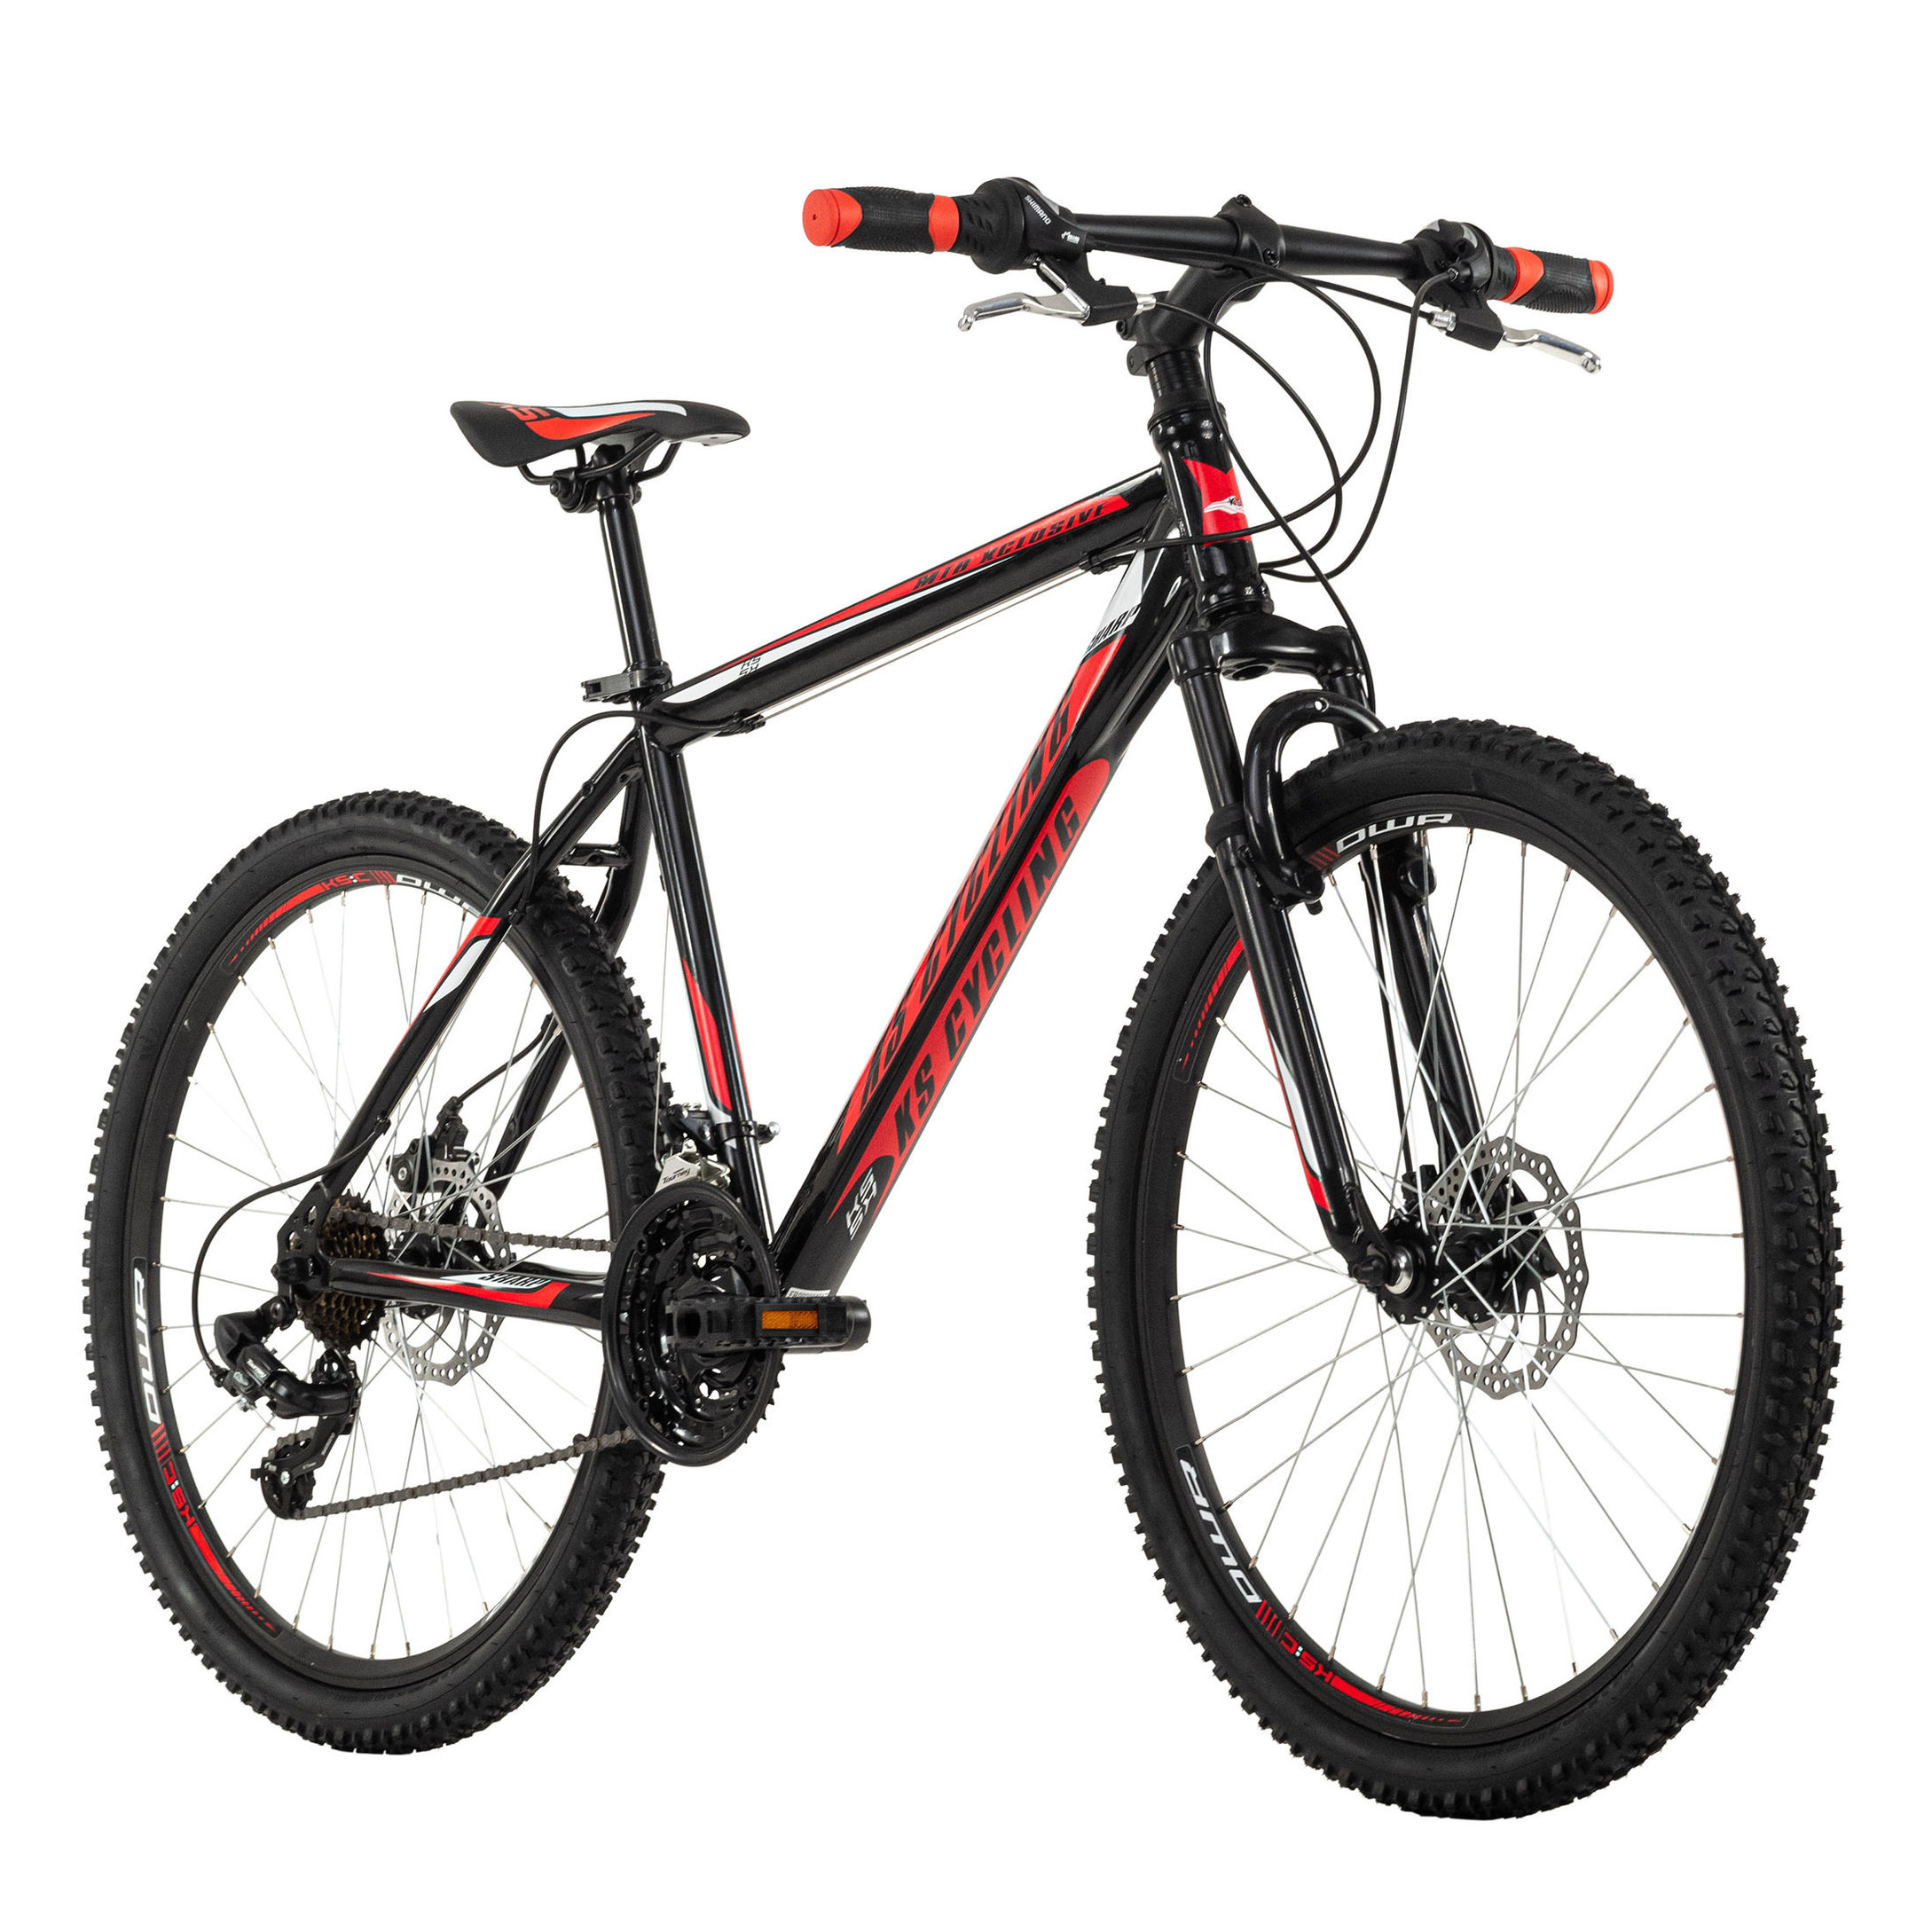 KS Cycling Mountainbike Hardtail 26 Zoll Sharp schwarz-rot schwarz-rot  Größe: 51 cm online kaufen - Orbisana